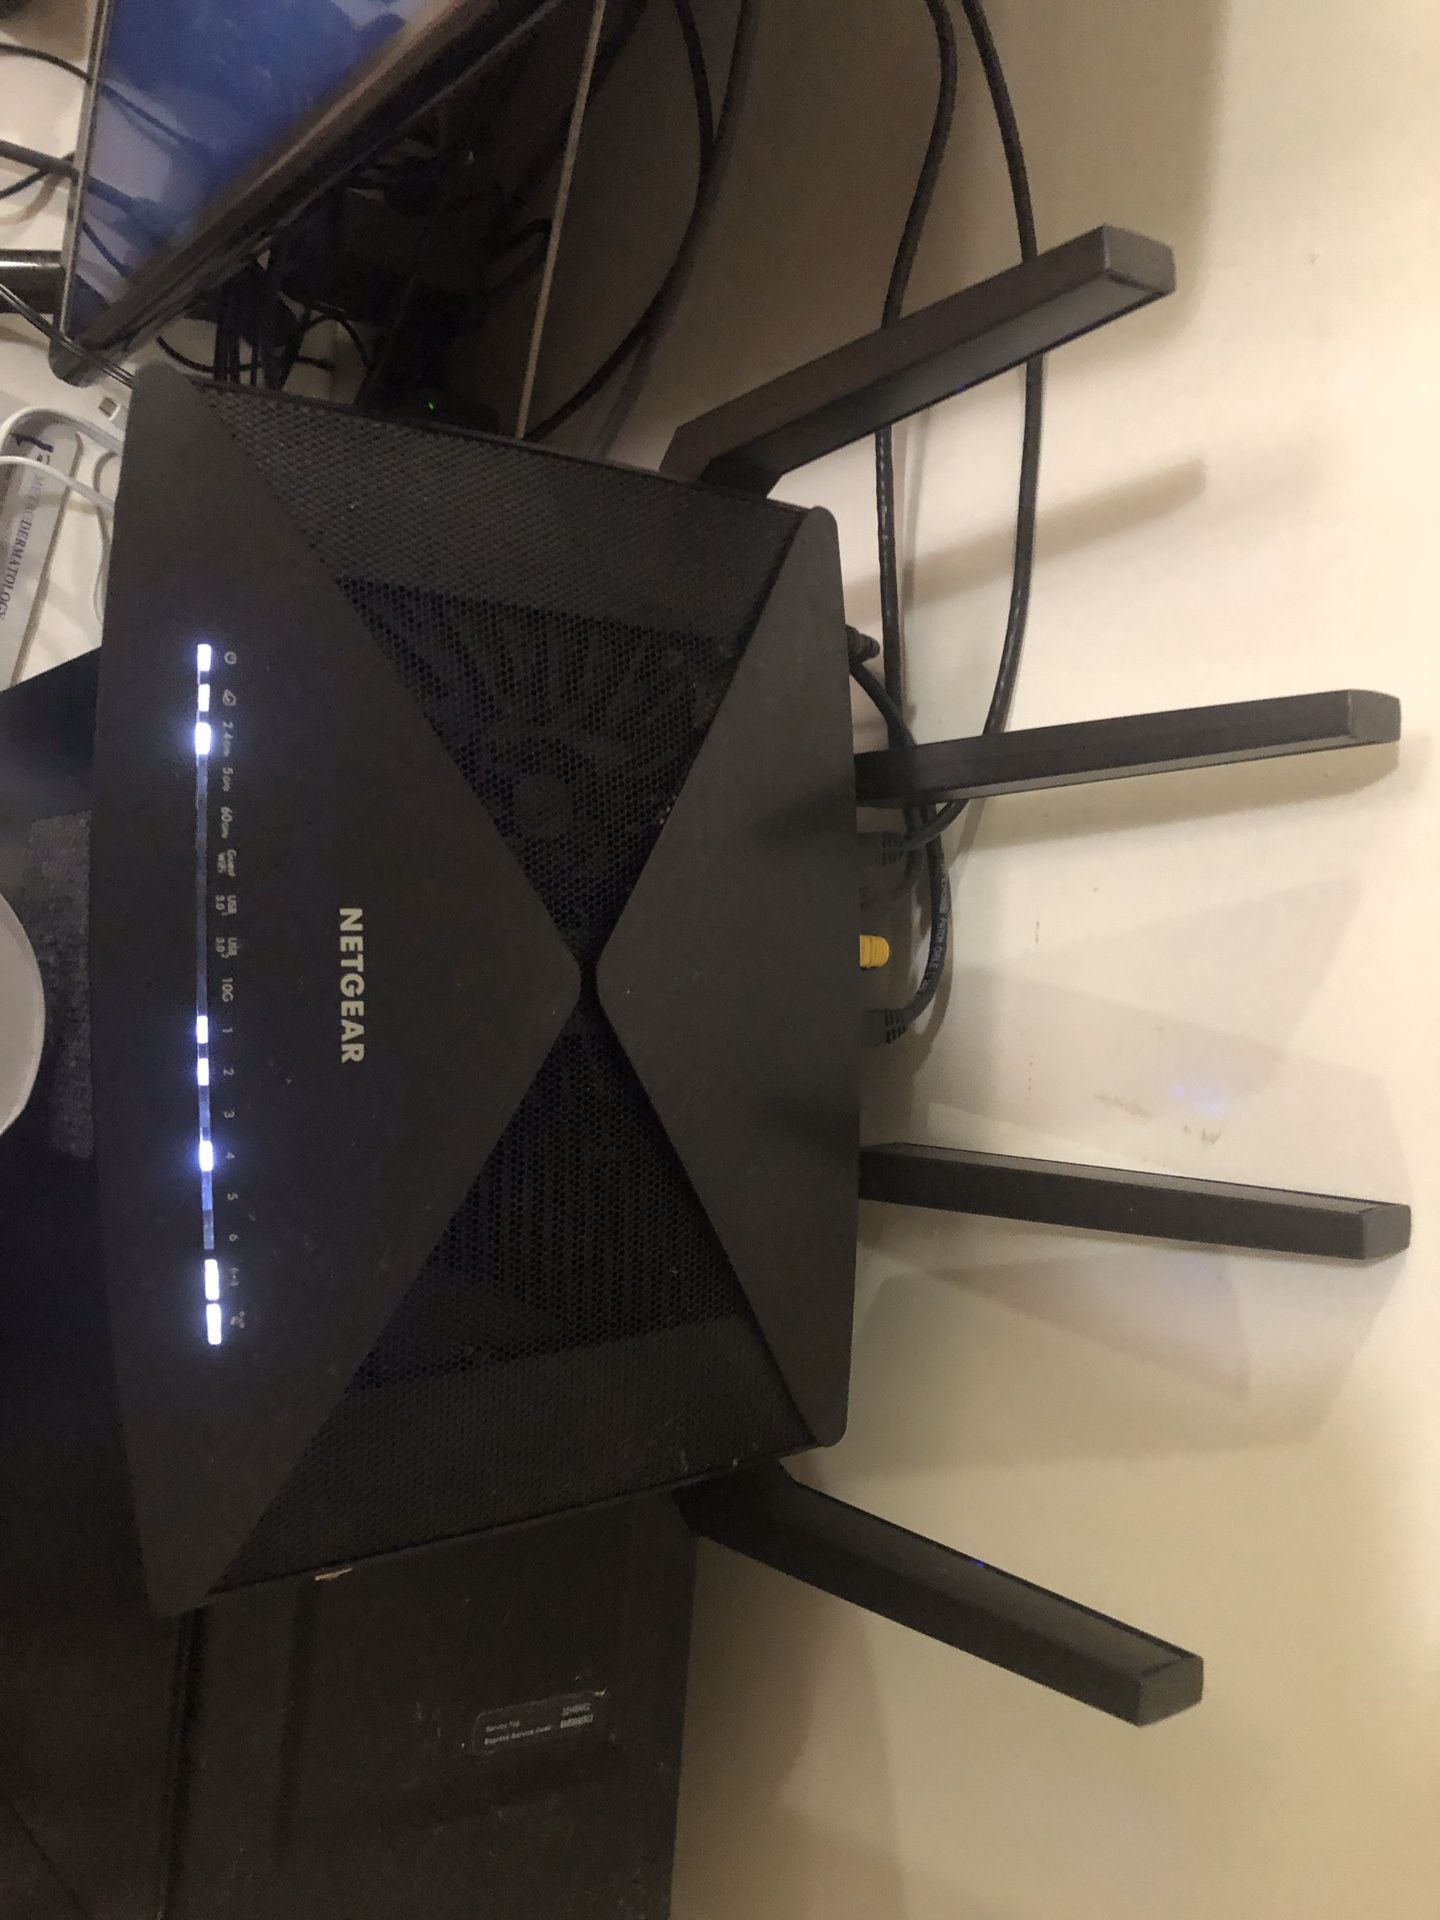 NETGEAR R9000 Nighthawk X10 Smart WiFi Router Quad-Stream 802.11ac + 802.11ad